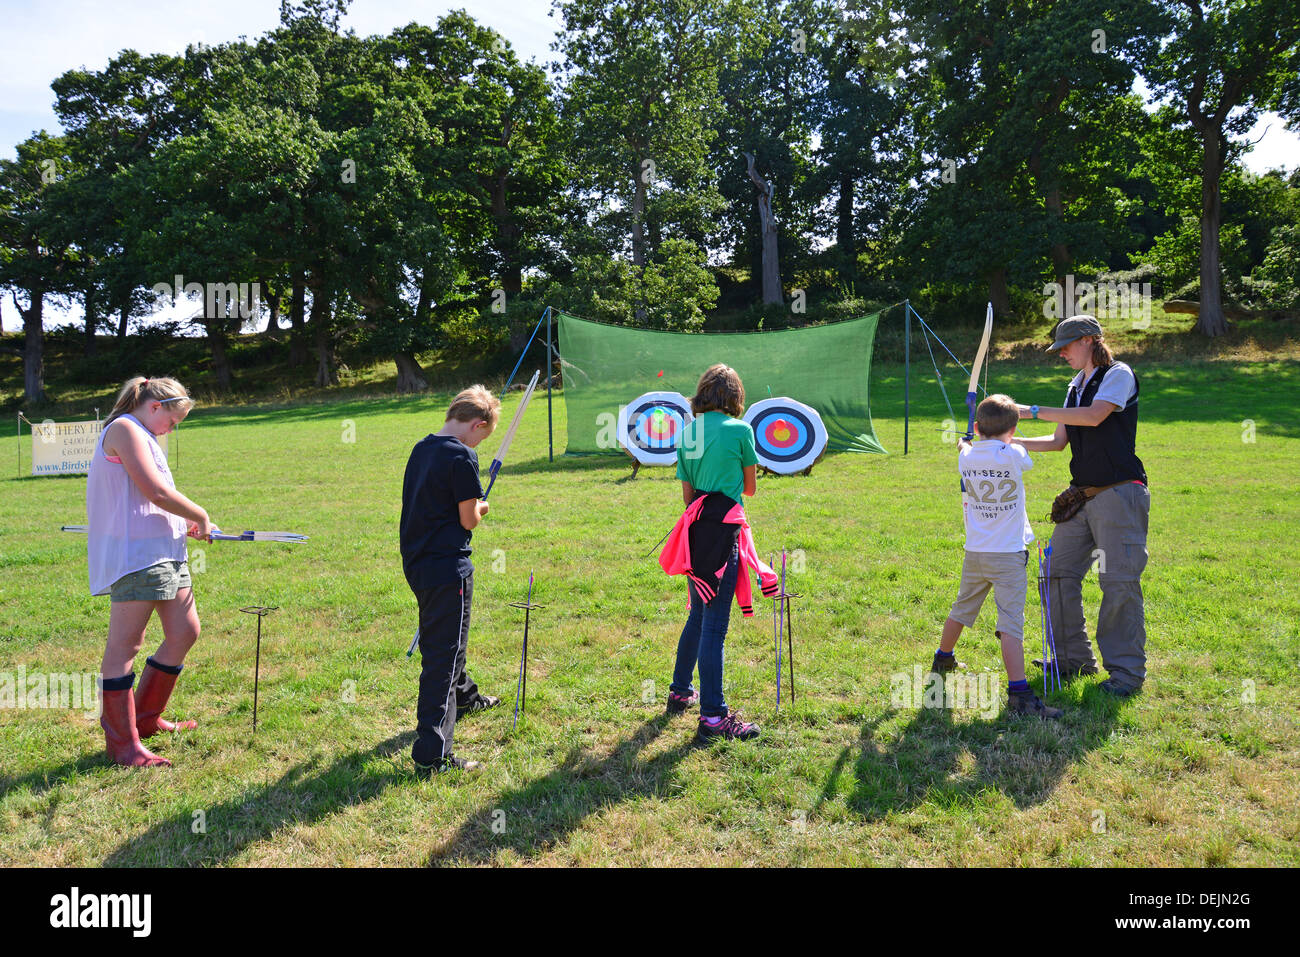 Les enfants d'essayer le tir à l'Exposition agricole de Dunster, château de Dunster Pelouses, Dunster, Somerset, England, United Kingdom Banque D'Images